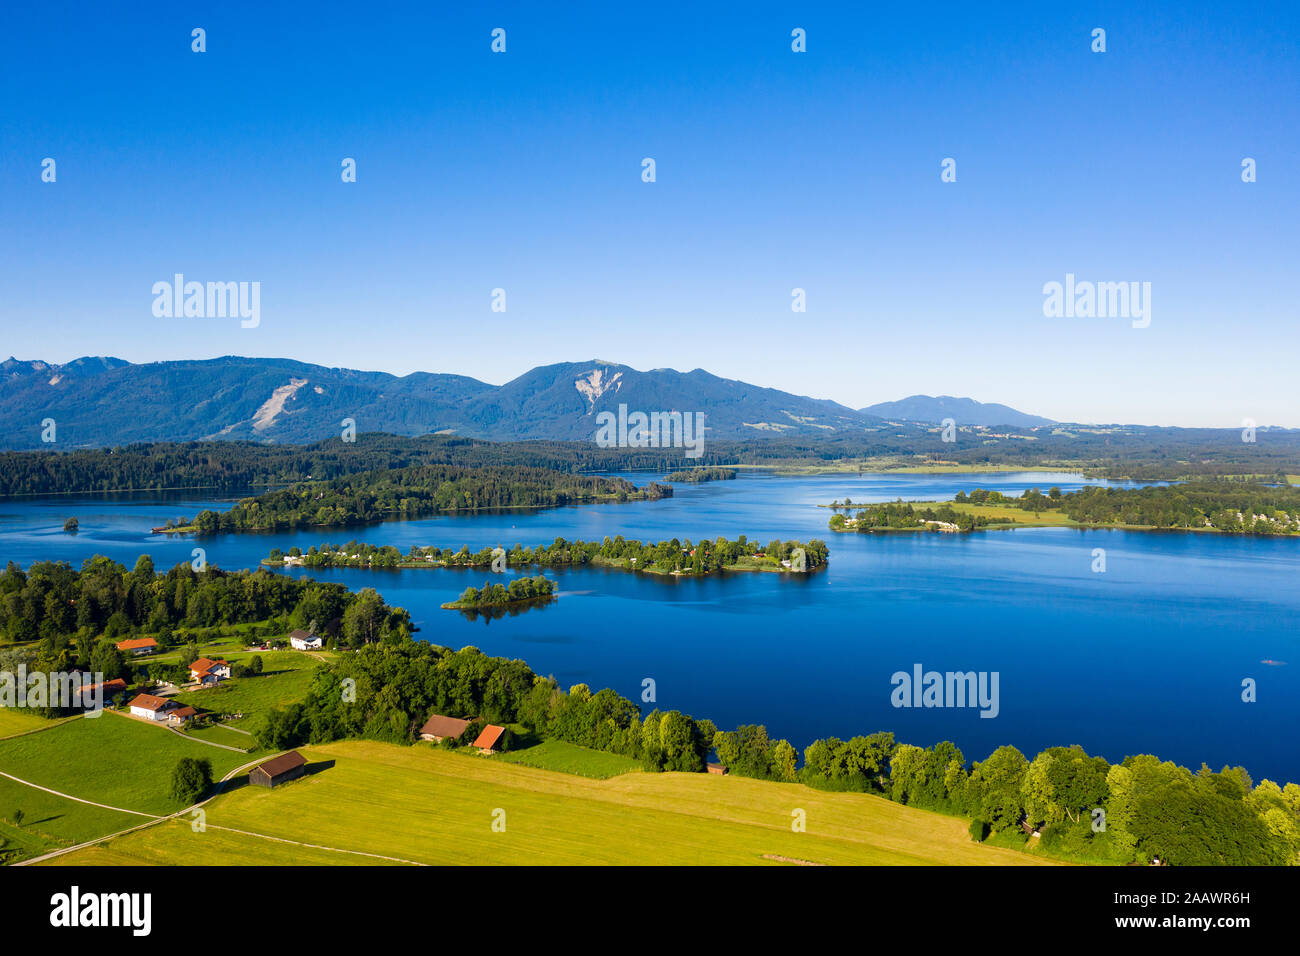 Belle vue sur le lac Staffelsee et Buchau Island, Alpes bavaroises, Allemagne Banque D'Images